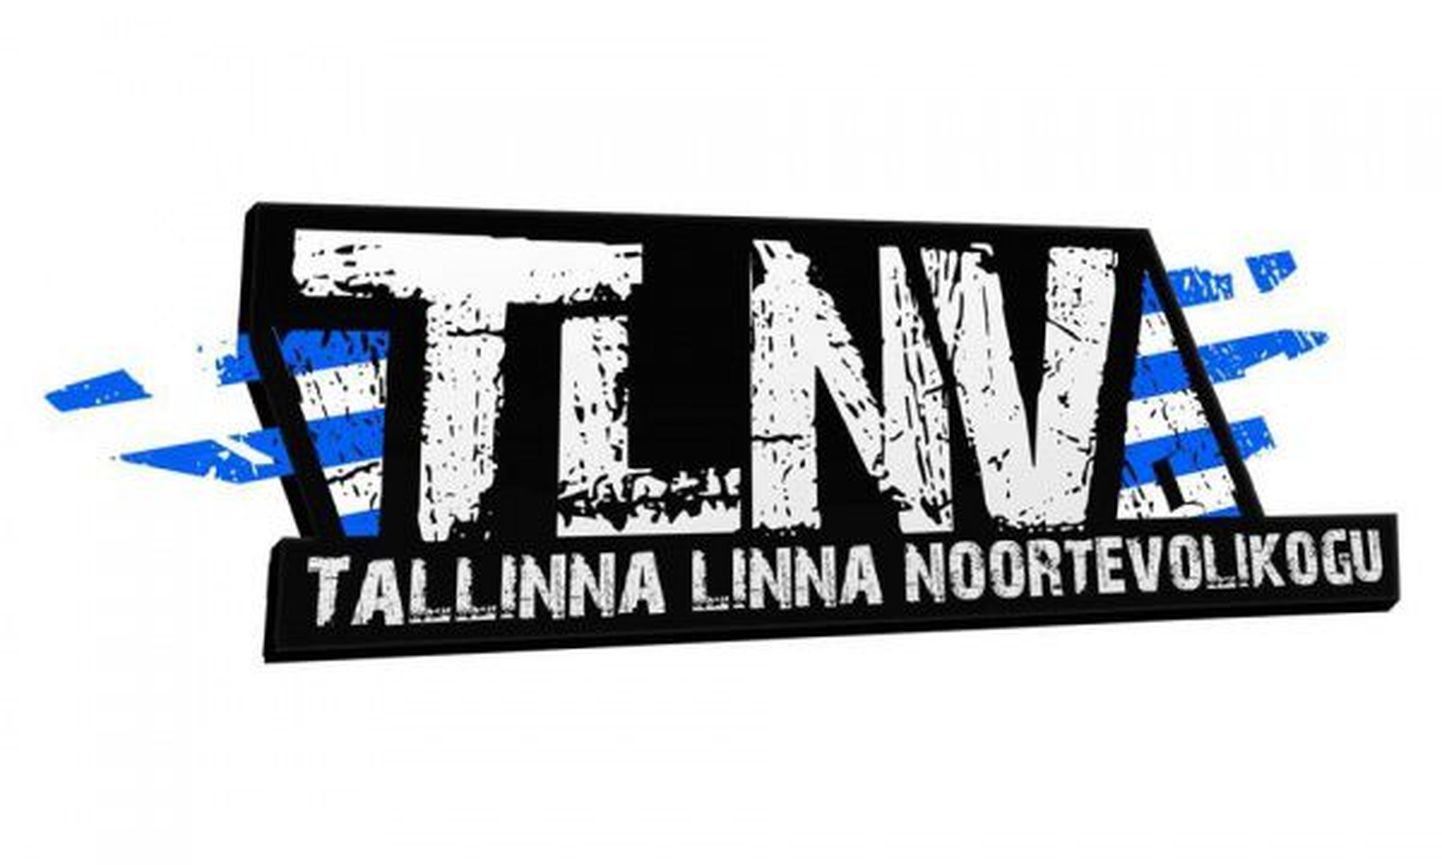 Tallinna linna noortevolikogu.